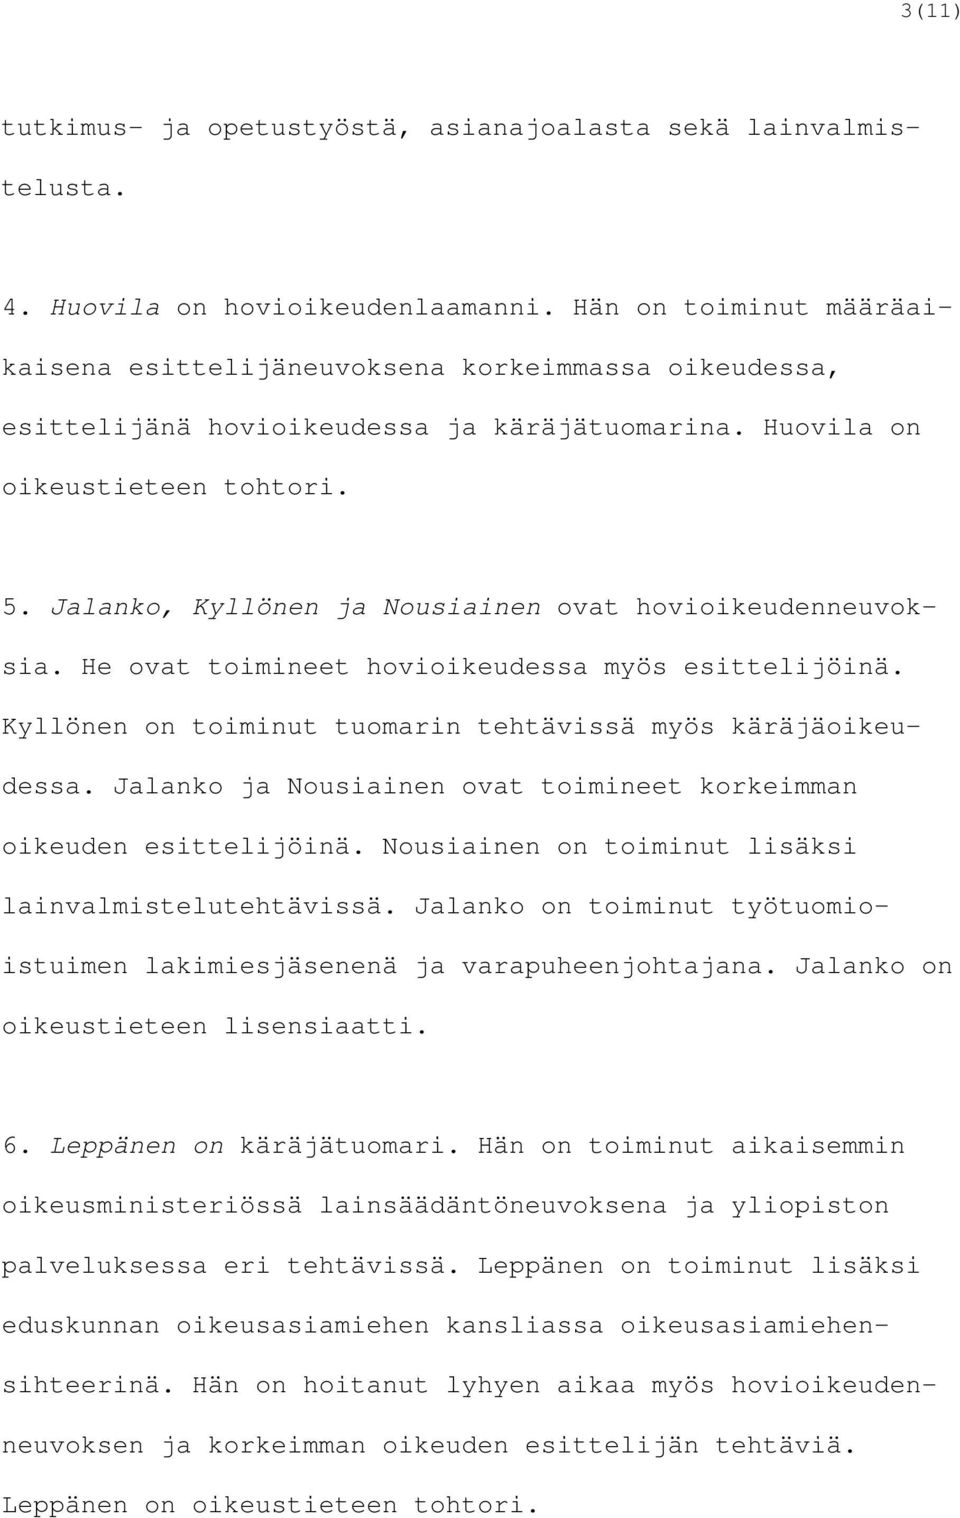 Jalanko, Kyllönen ja Nousiainen ovat hovioikeudenneuvoksia. He ovat toimineet hovioikeudessa myös esittelijöinä. Kyllönen on toiminut tuomarin tehtävissä myös käräjäoikeudessa.